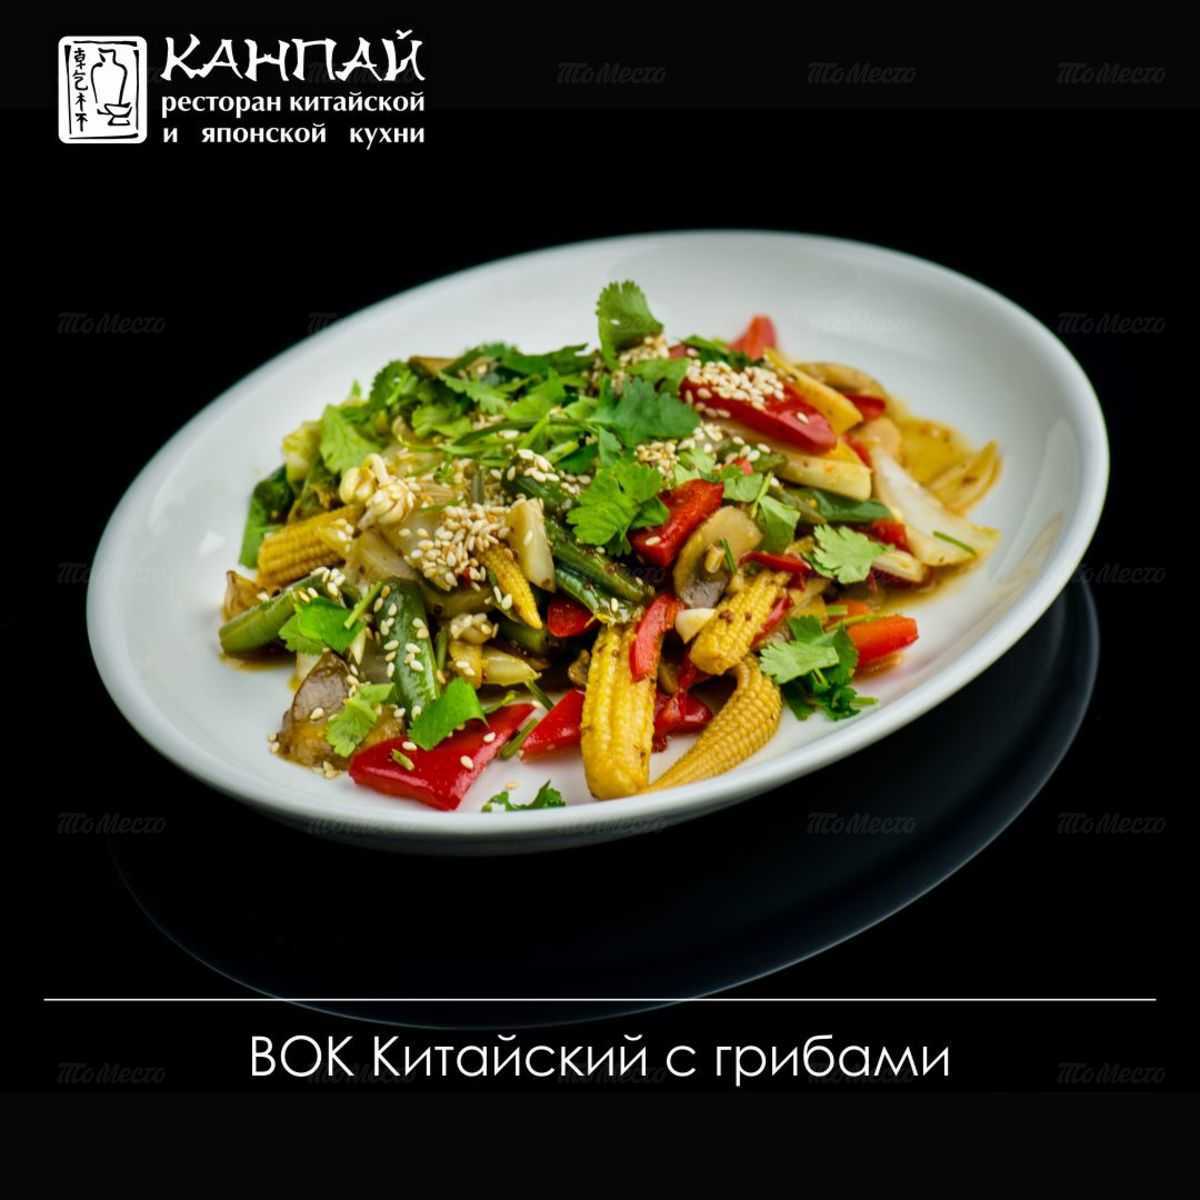 Меню и цены ресторана Канпай на Оренбургском тракте фото 41